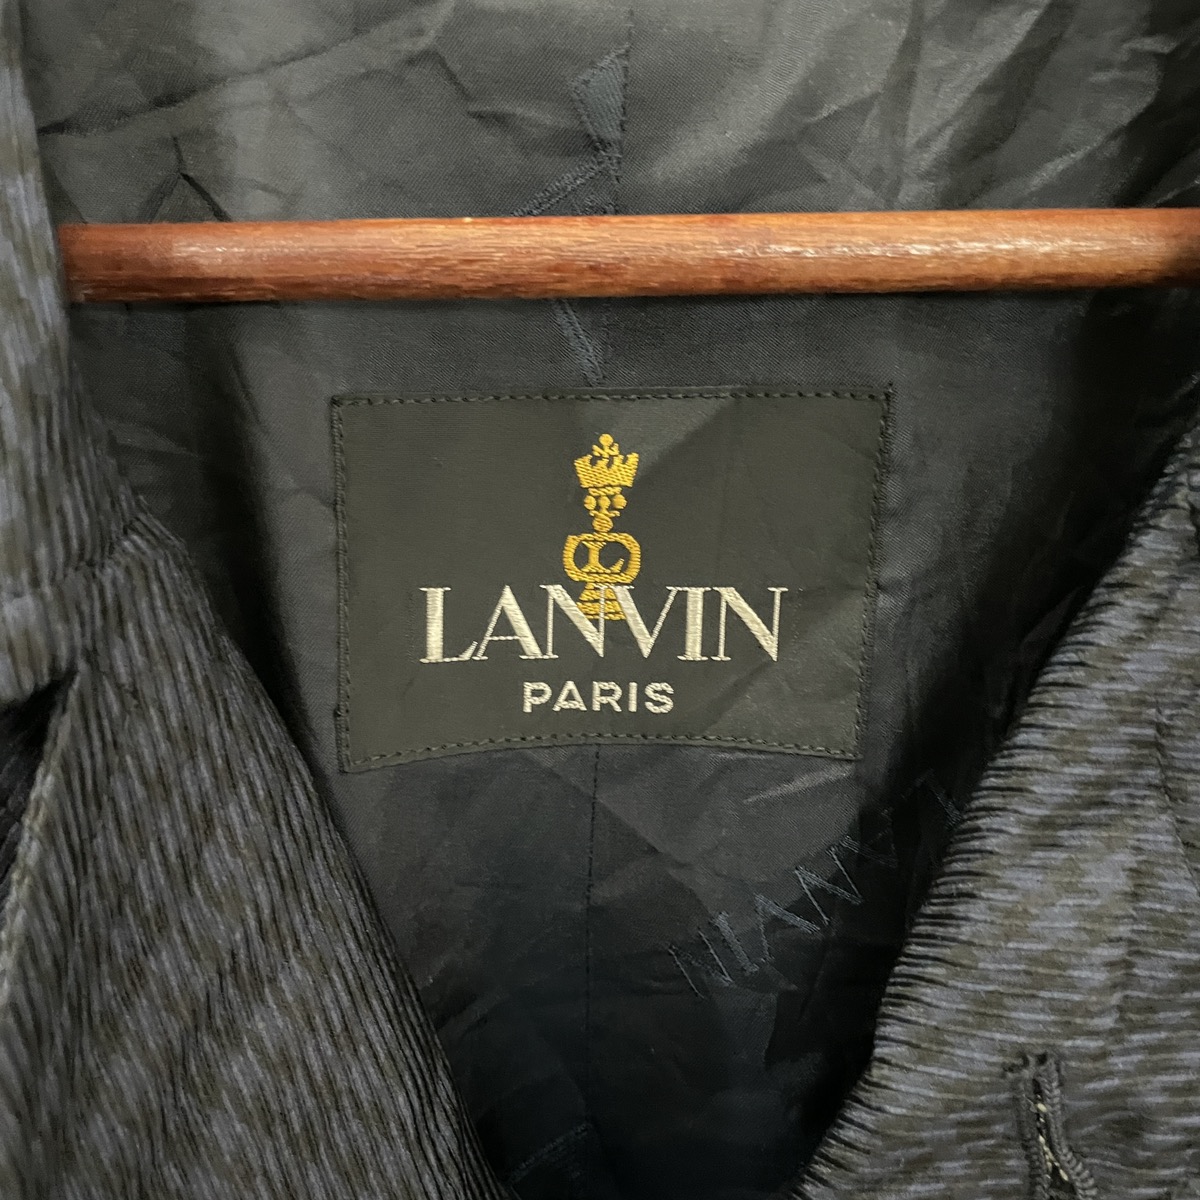 Vintage Lanvin Paris Trench Coat - 5